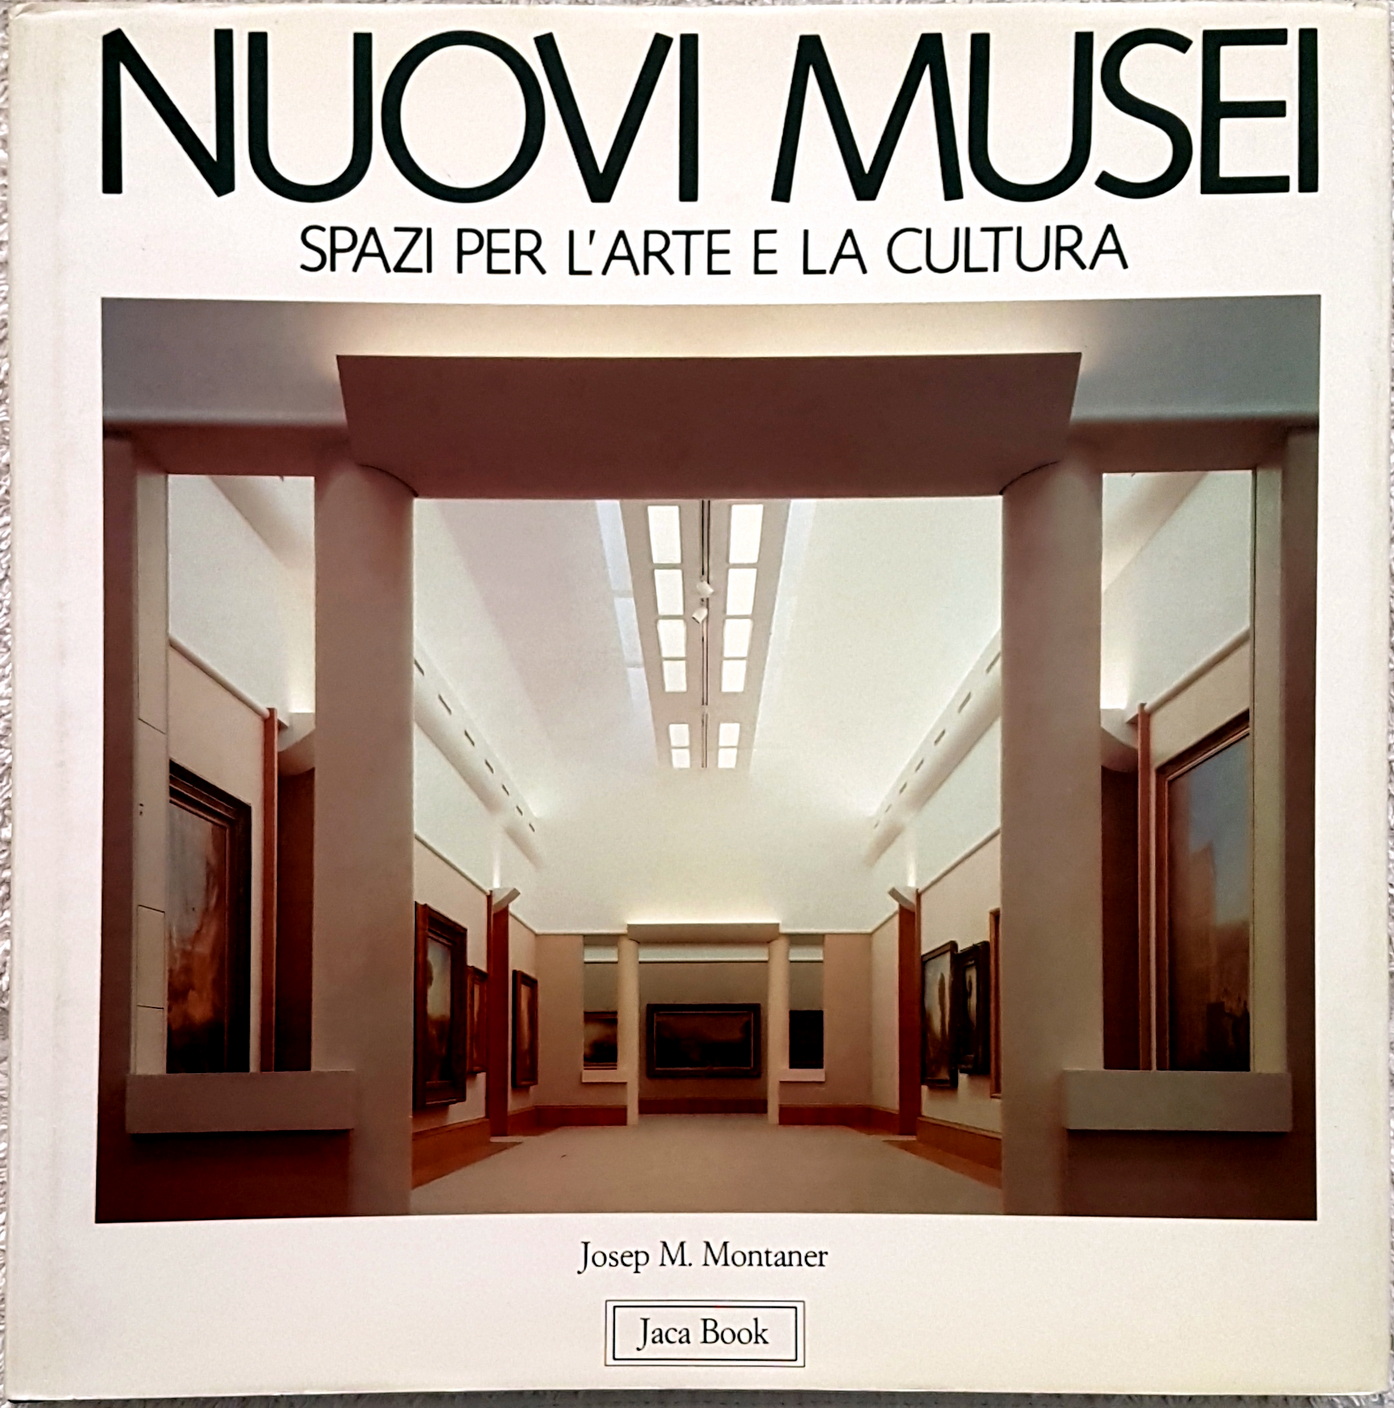 Josep Maria Montaner, Nuovi Musei. Spazi per l’arte e la cultura, Ed. Jaca Book, 1990